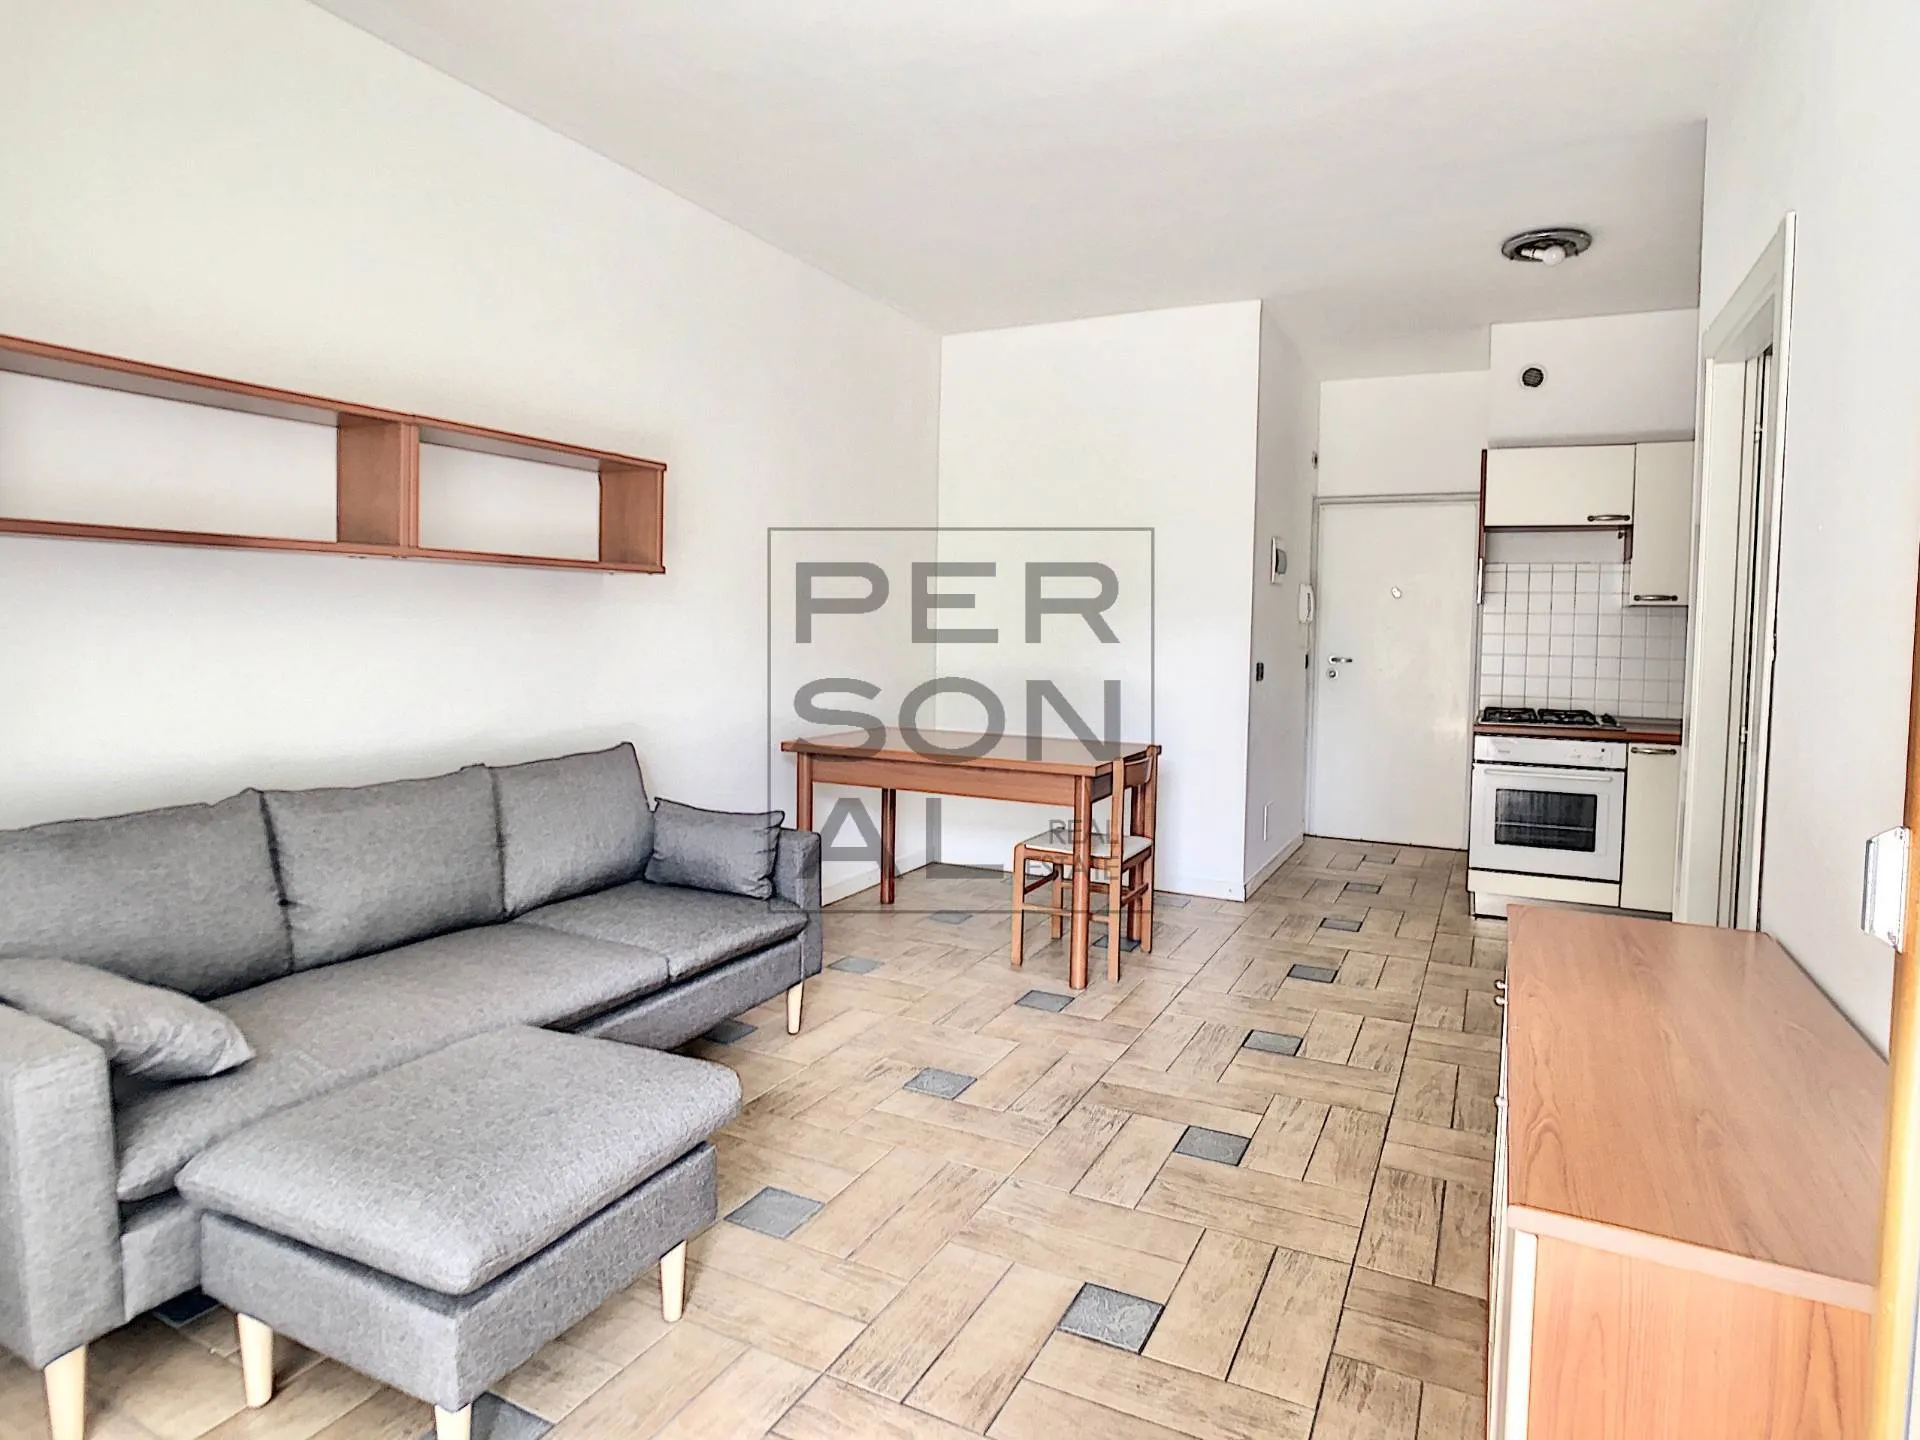 Immagine per Appartamento in affitto a Trento